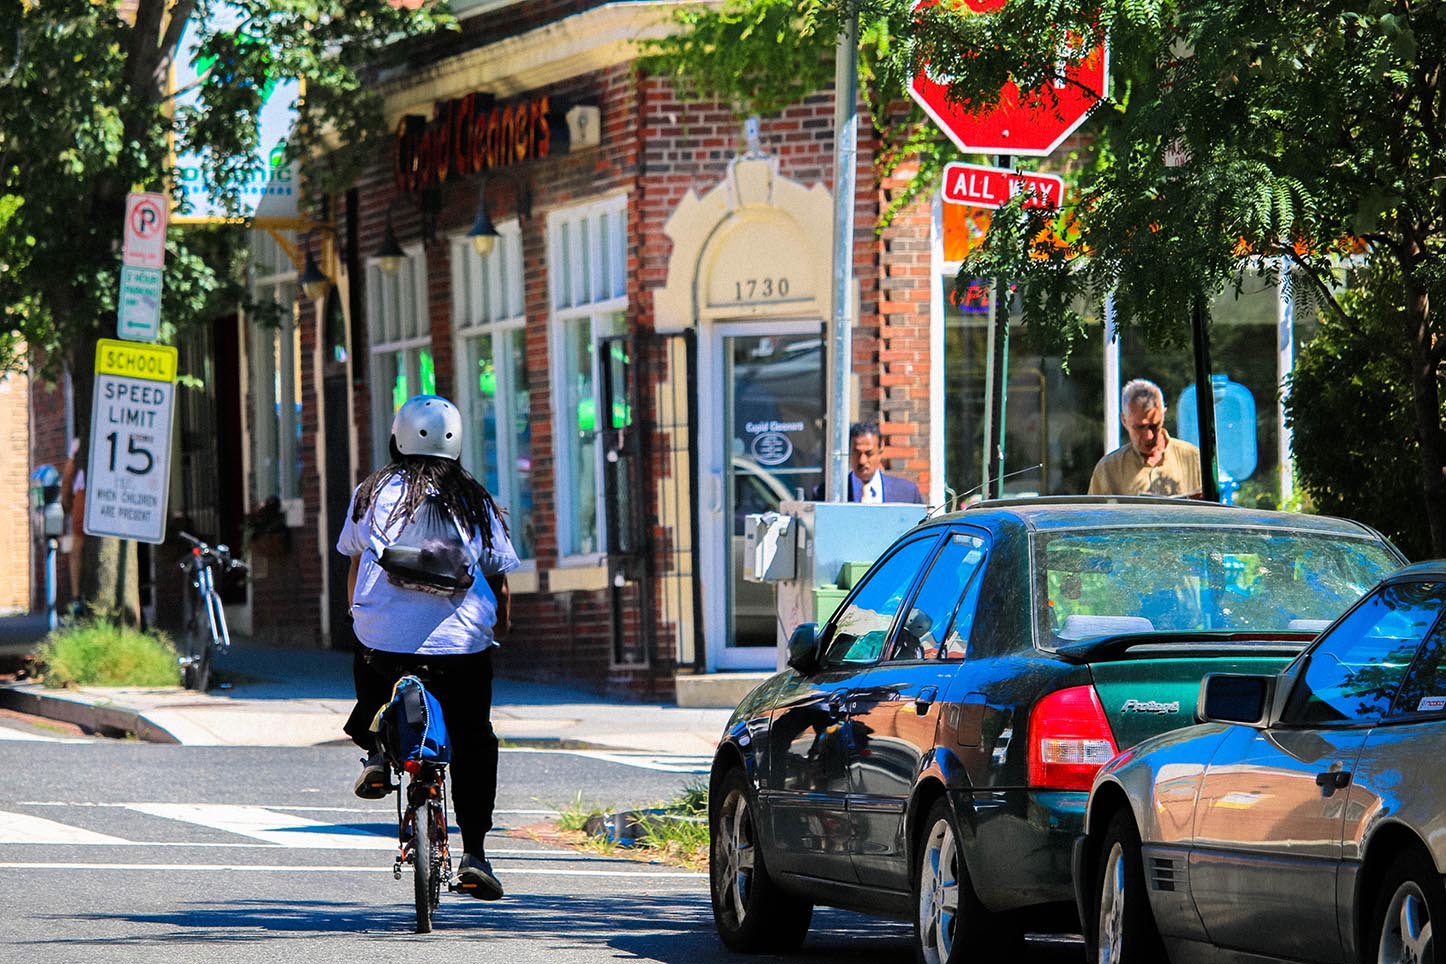 Bicycler in Adams Morgan, Washington, DC